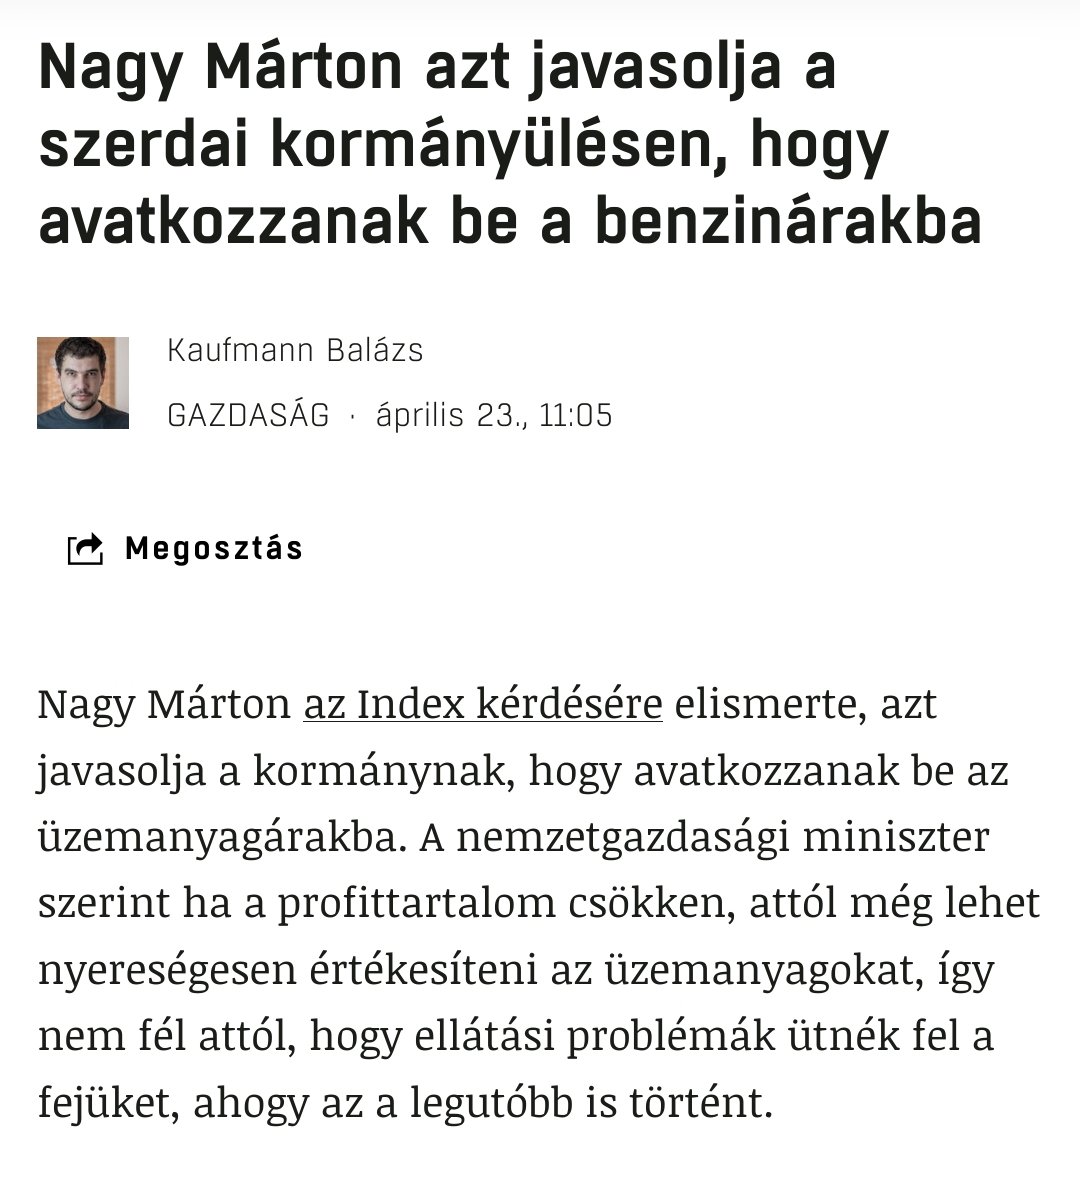 'nem fél attól, hogy ellátási problémák ütnék fel a fejüket' #NagyMárton

Mert?! Valami Napkitörés vagy gammasugárzás miatt megváltoztak a piacgazdaság legalapvetőbb tulajdonságai a Földön?! 🙃 Ez egy inkompetens fasz... 🤦‍♂️ #Fidesz #posztkommunista #pokol